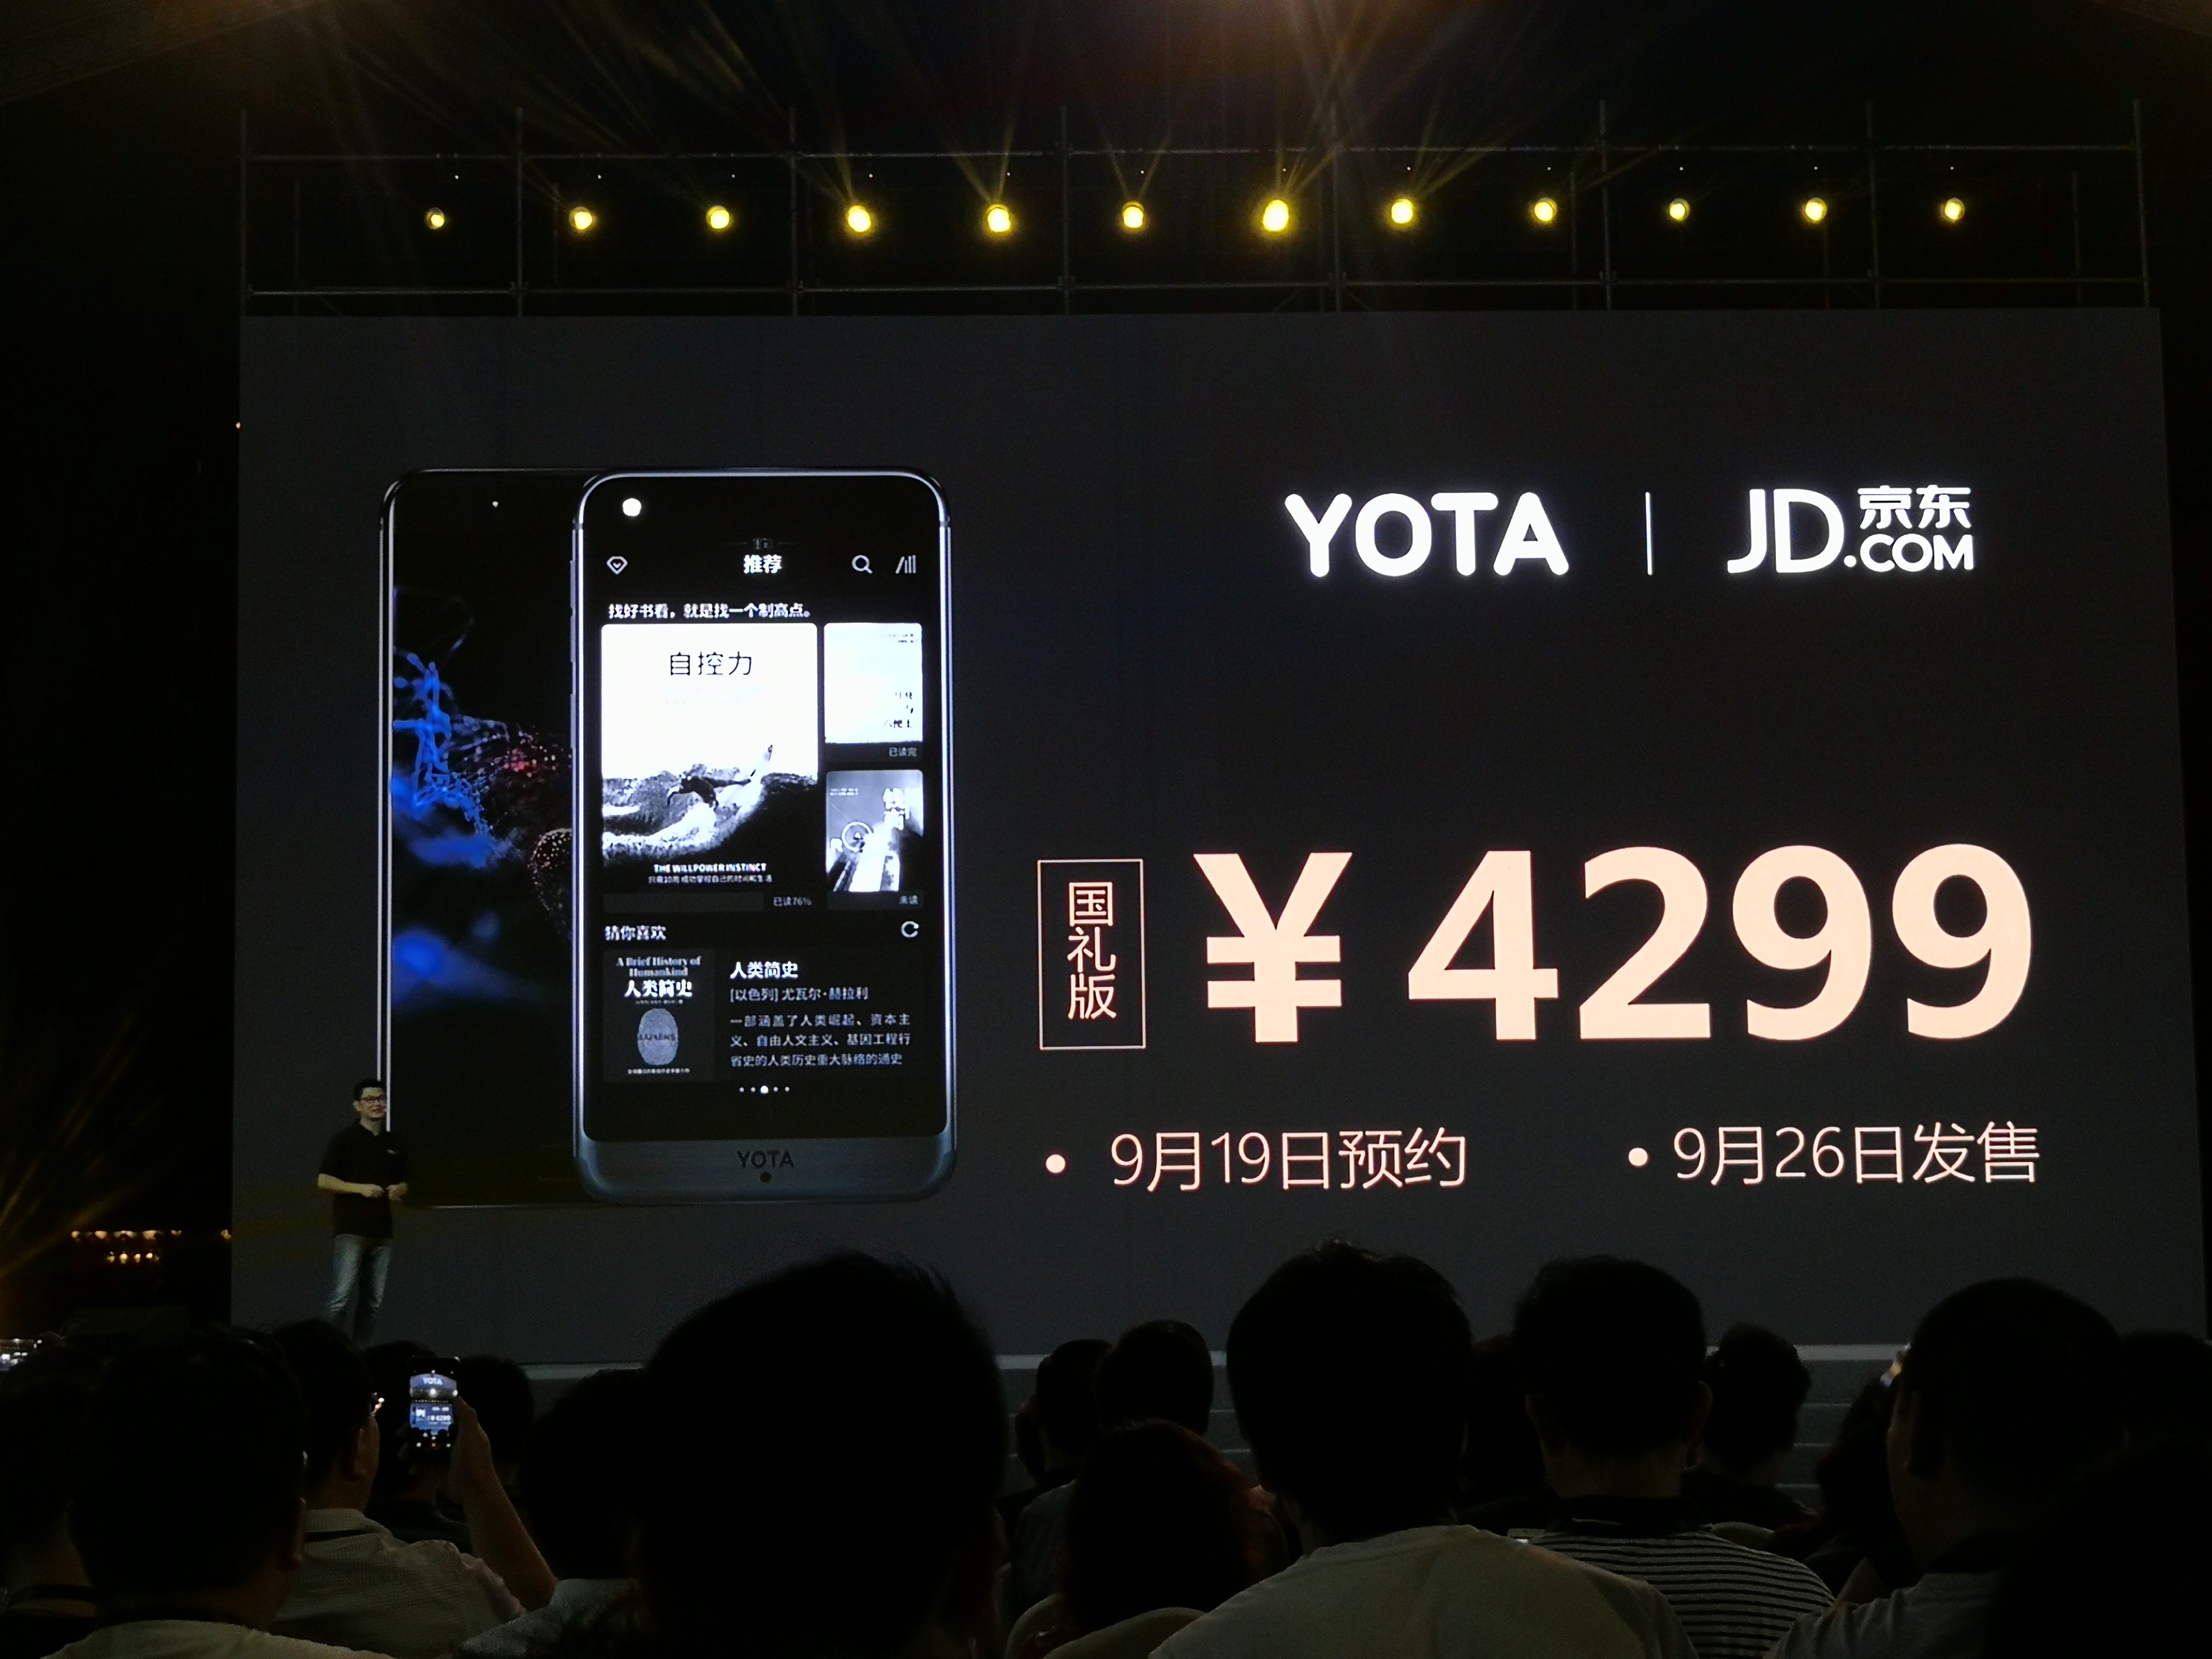 大显手机大全，普京视为国礼的墨水屏手机升级 YOTA3 公布最高 4299